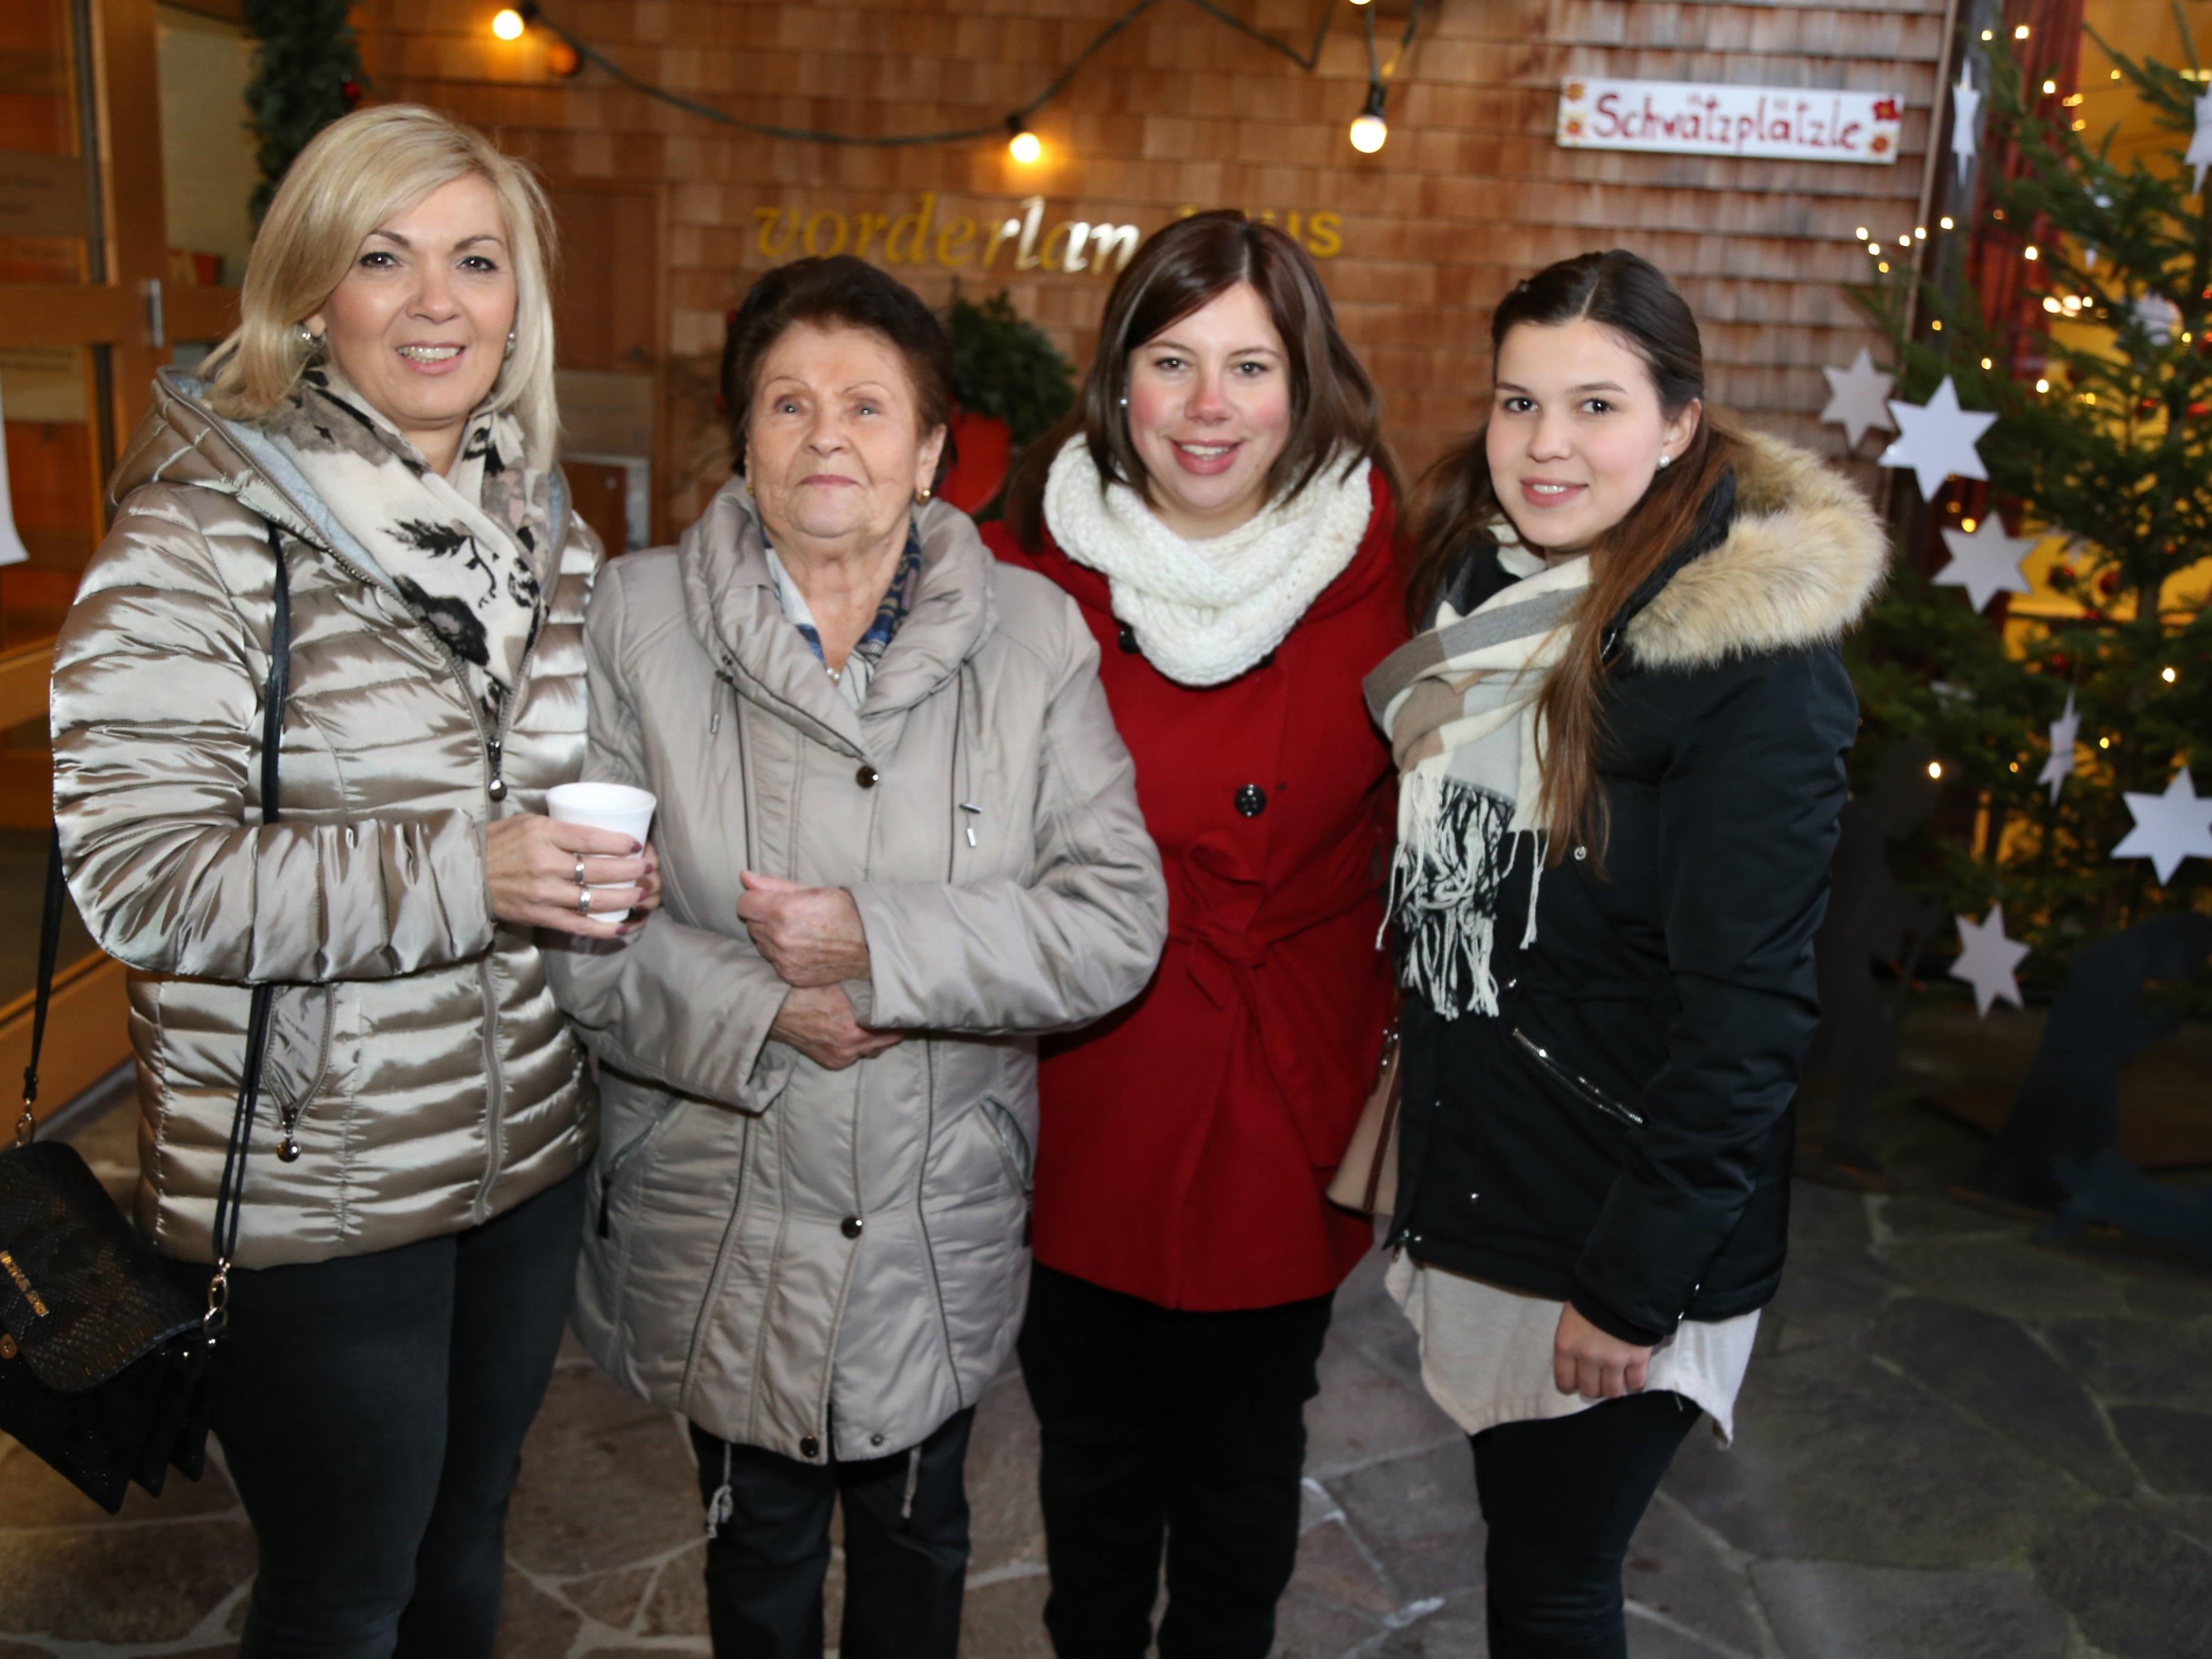 Cornelia, Mali, Lisa-Marie und Chiara genossen die Atmosphäre beim Vorderlandhus in Röthis.